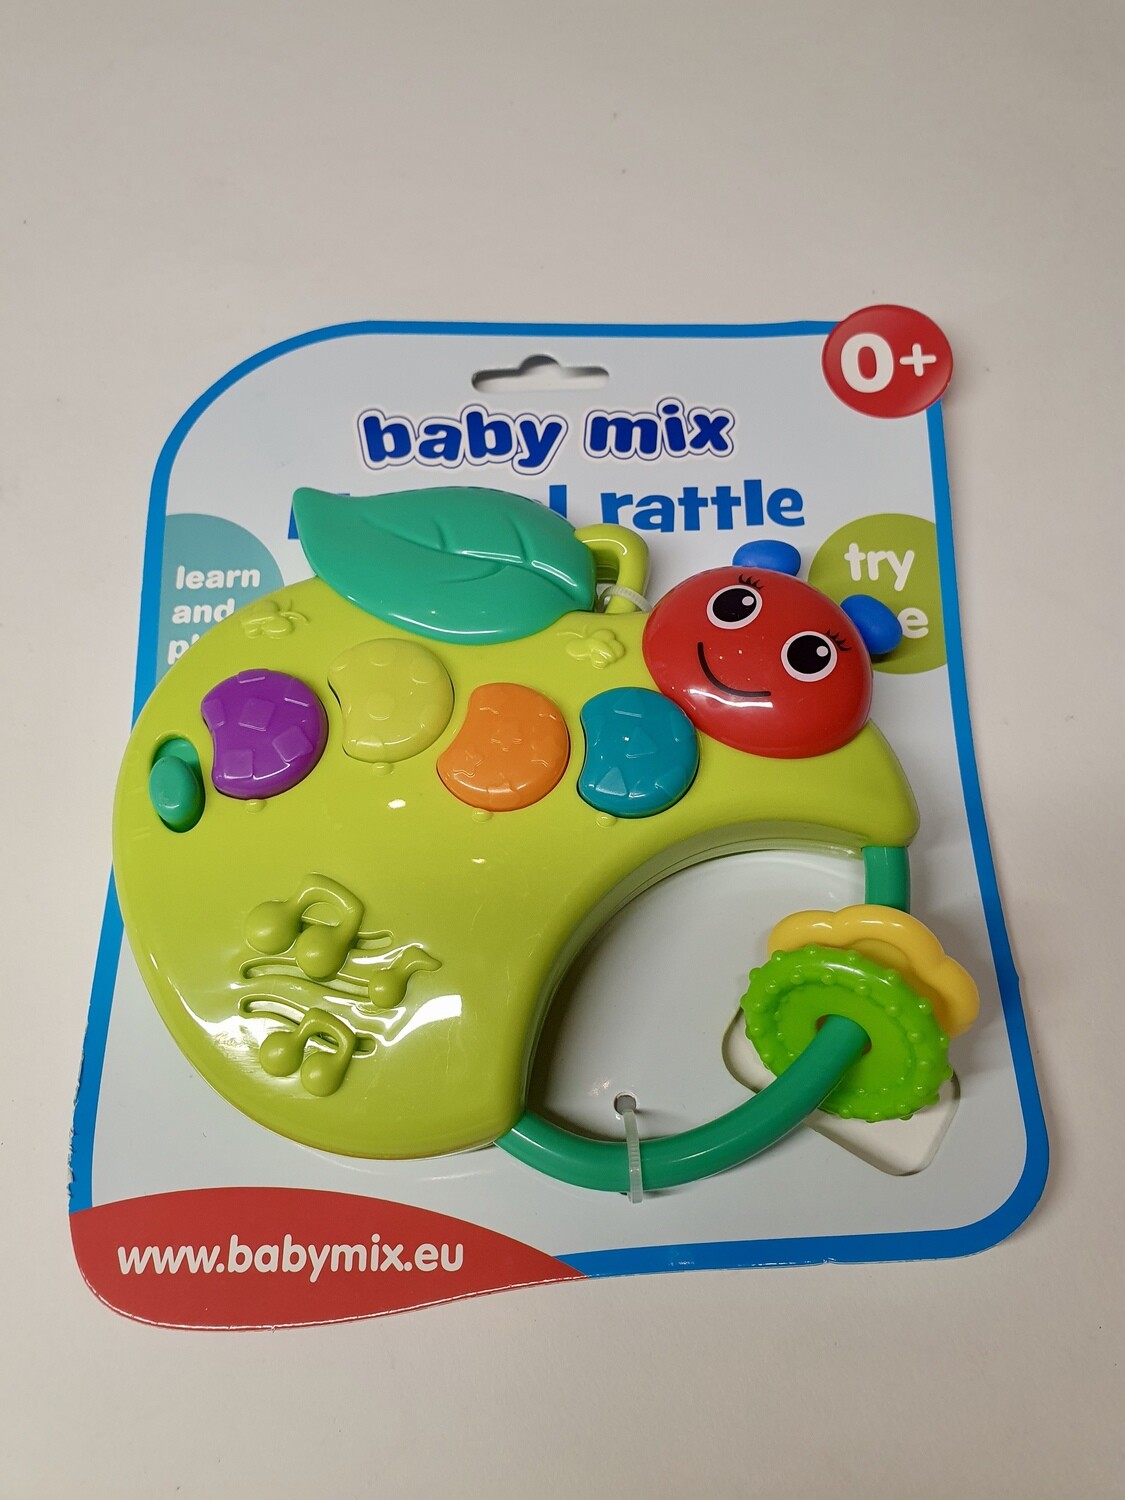 Muzikinis barškutis "baby mix"